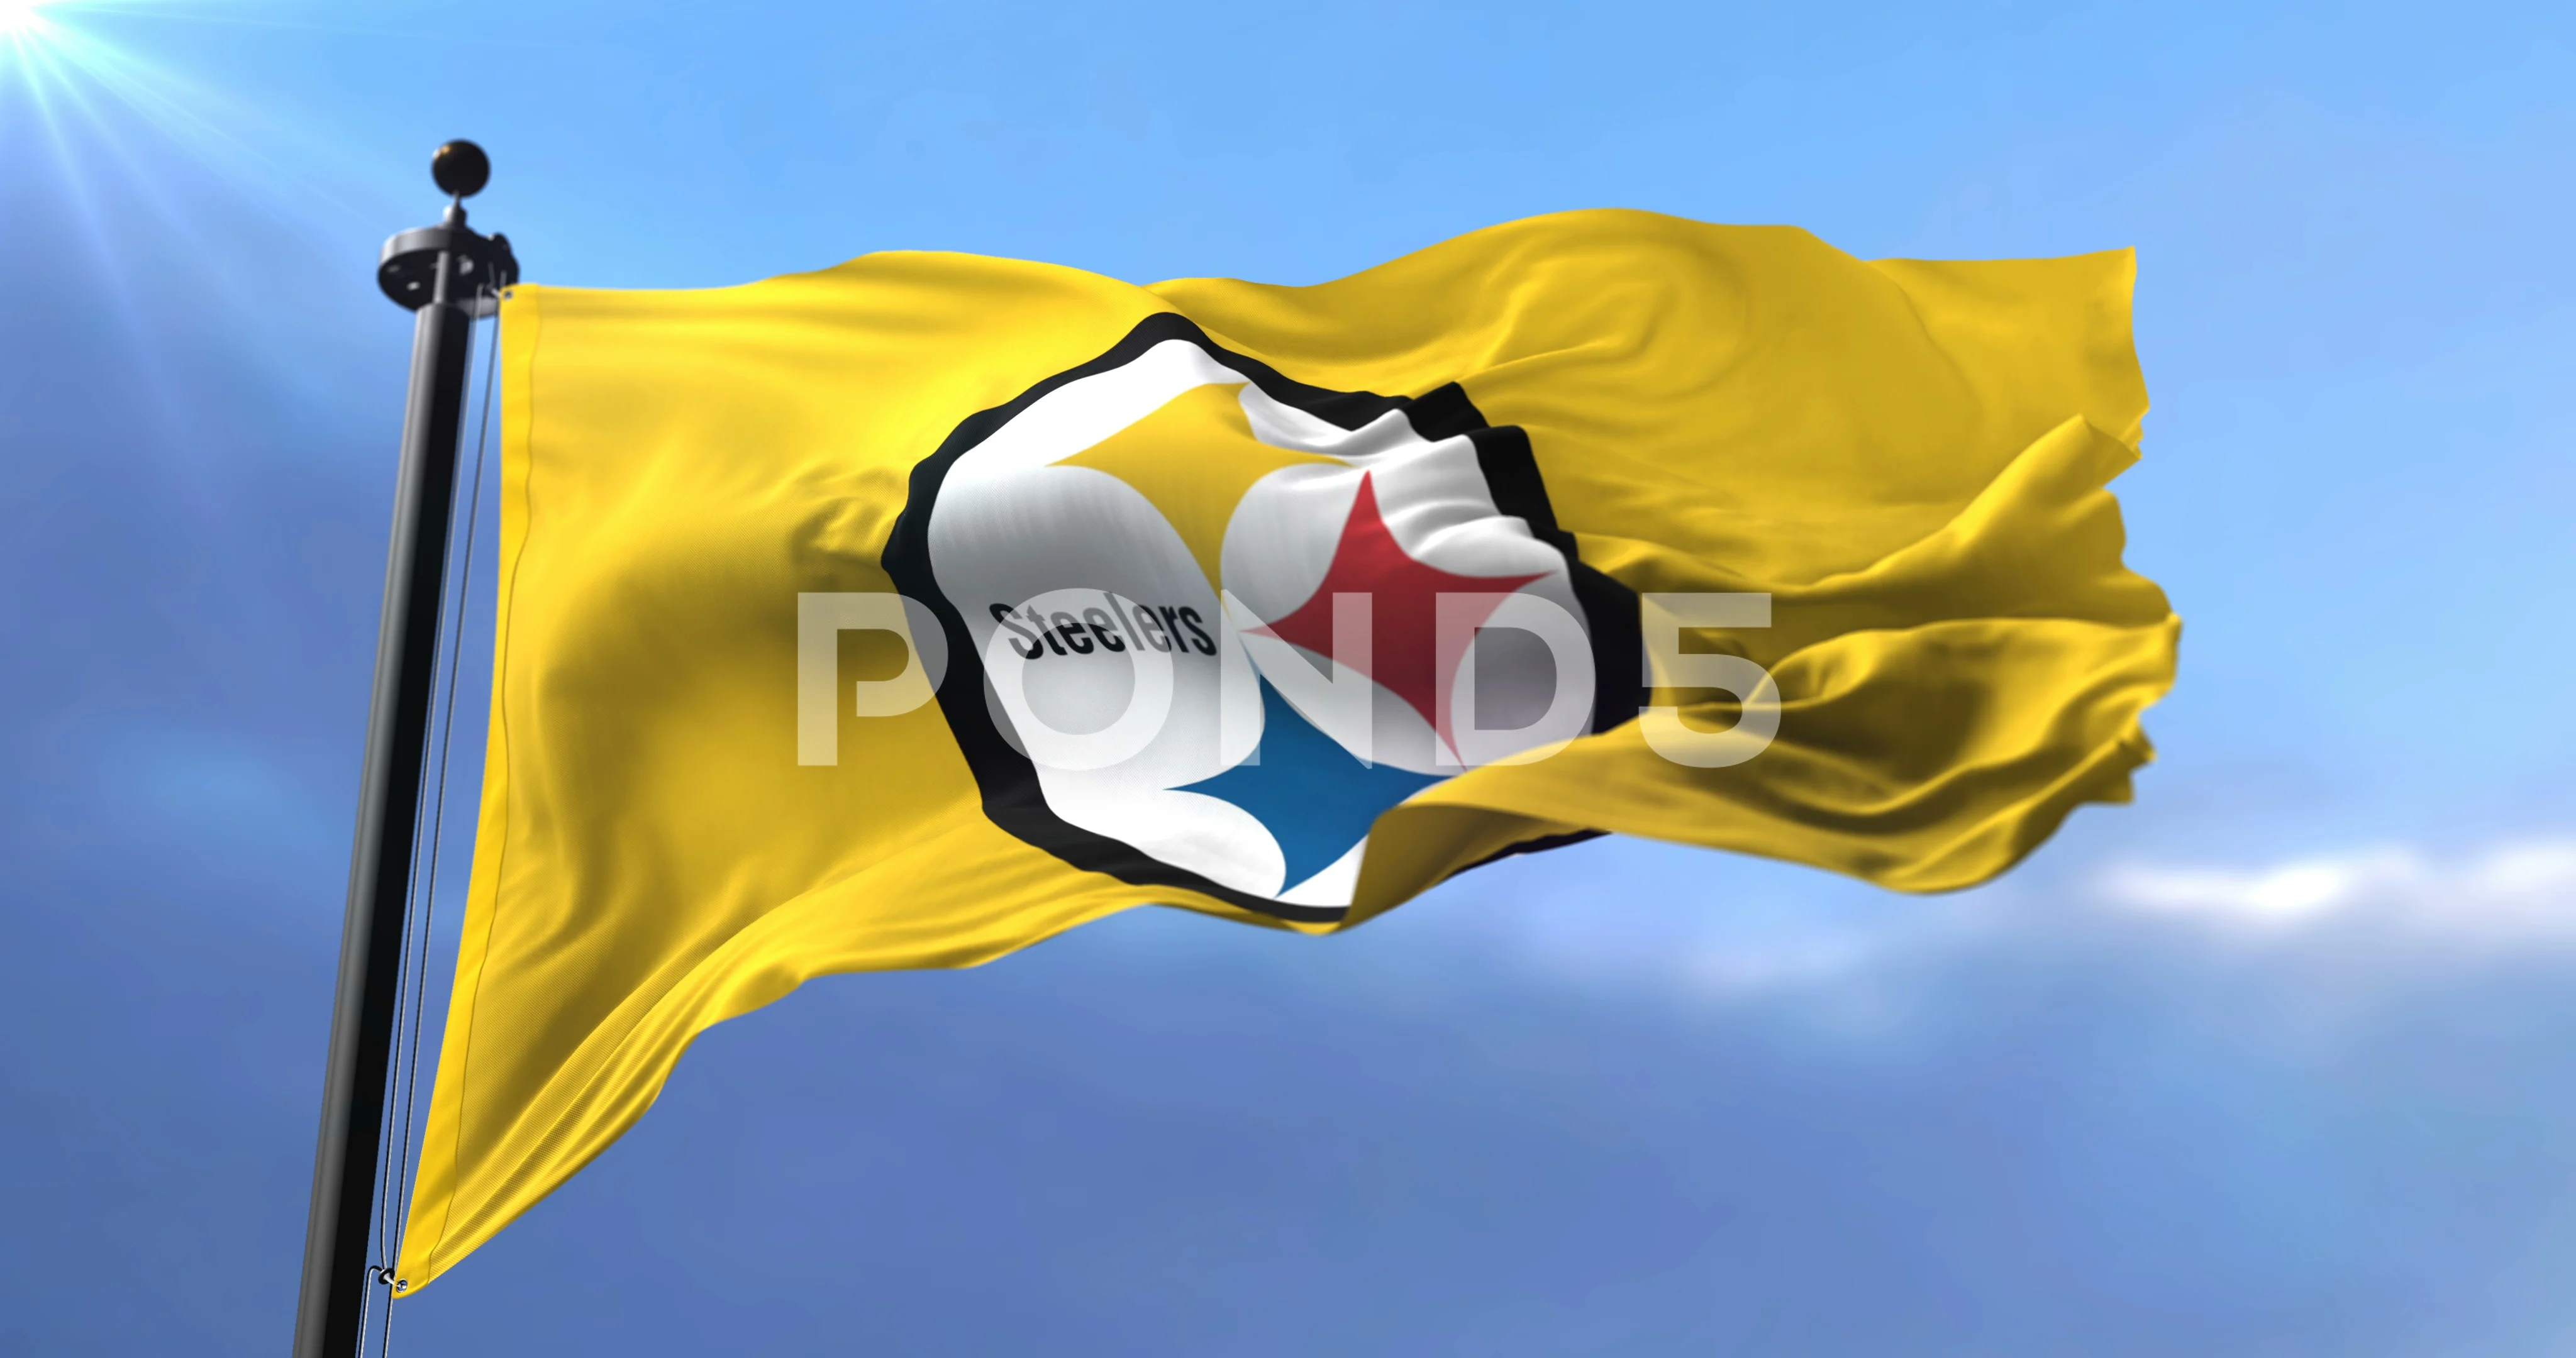 Pittsburgh Steelers flag, american football team, waving - loop